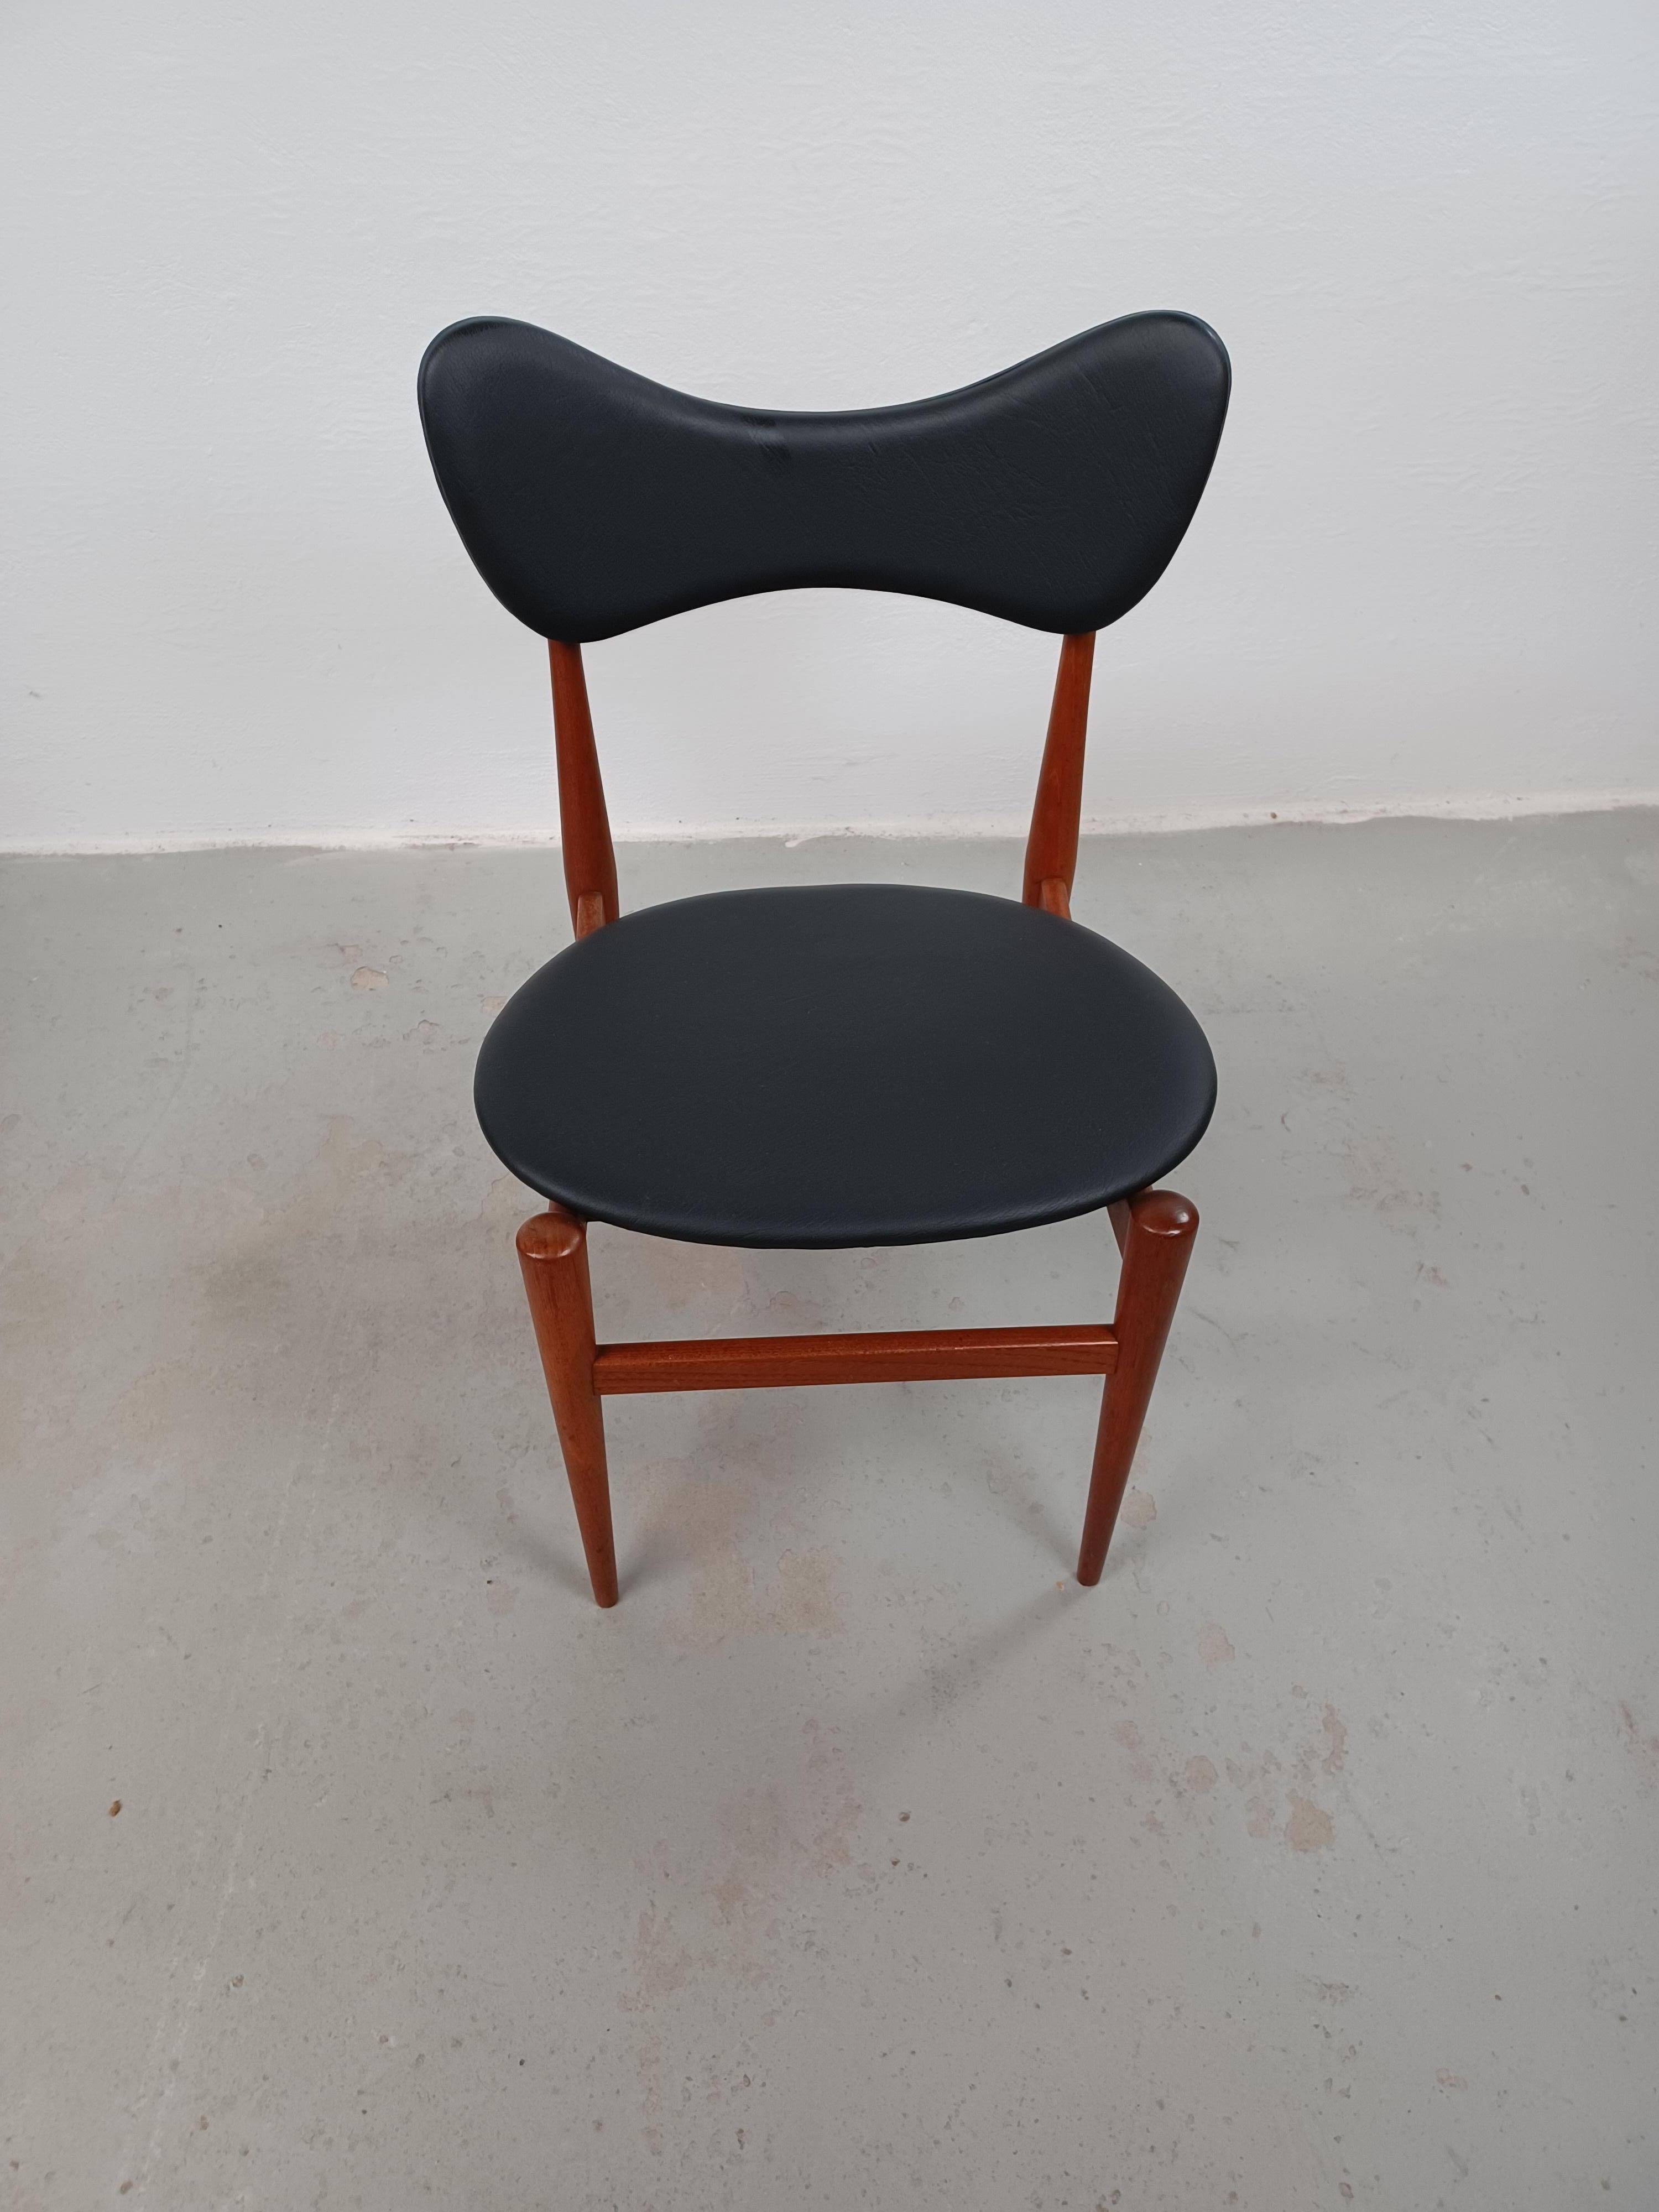 Chaise d'appoint en teck papillon Inge & Luciano Rubino des années 1960 par Sorø Stolefabrik

Cette chaise rare a été officiellement baptisée modèle 329, mais elle a été surnommée 